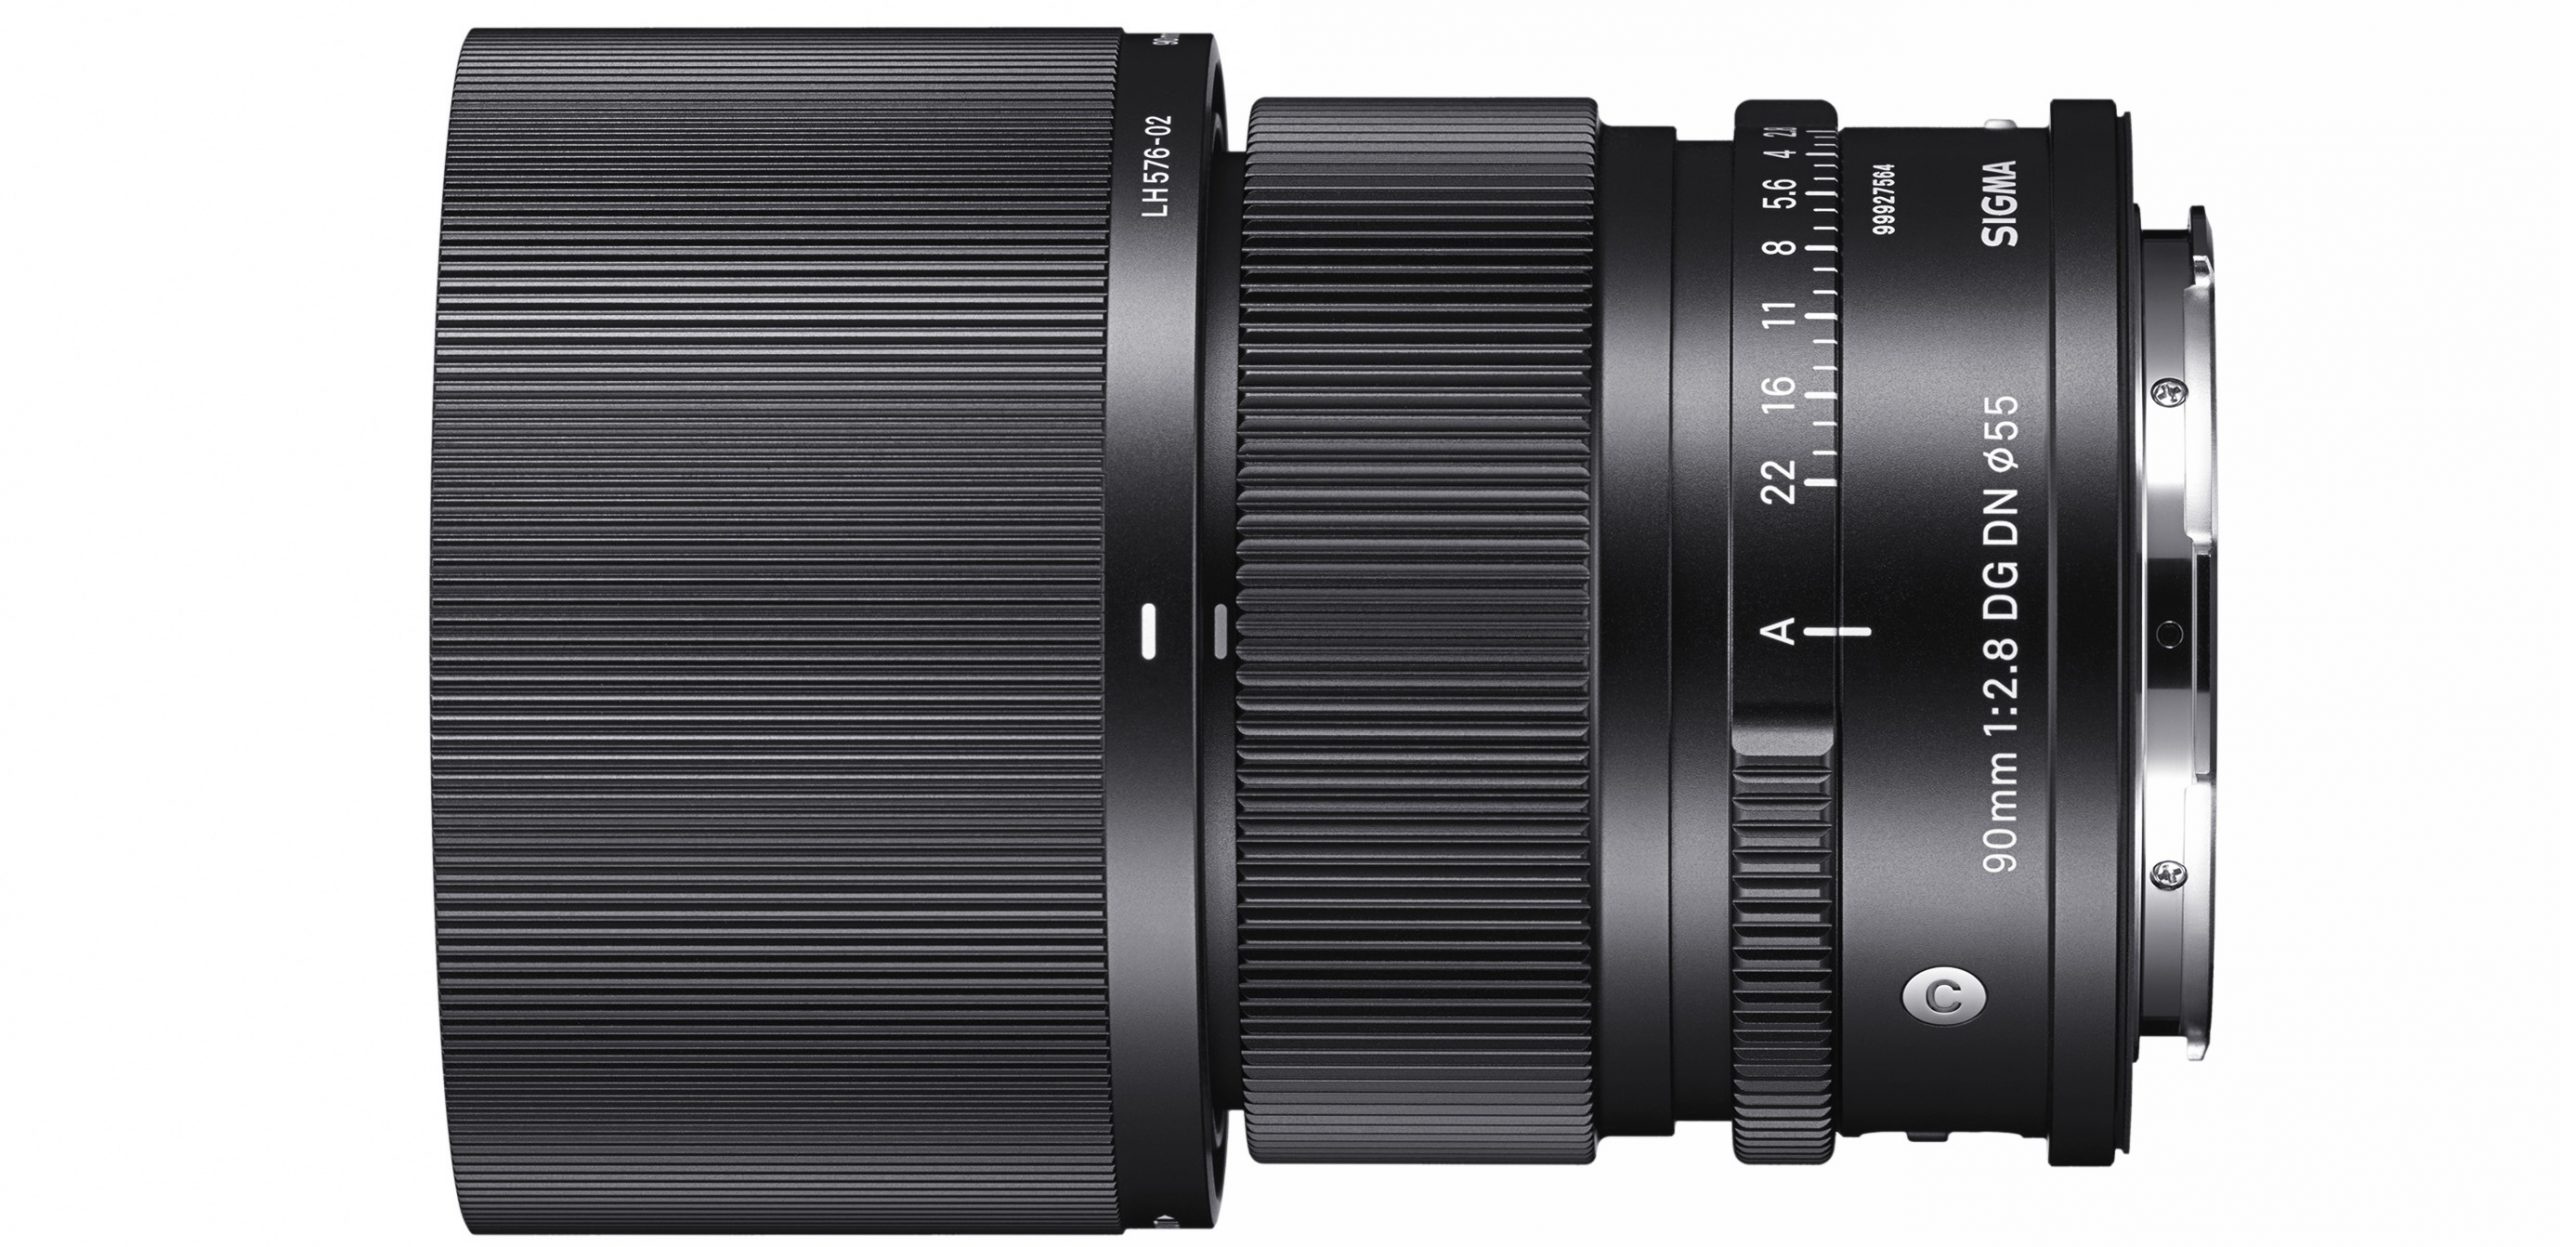 Sigma ra mắt hai ống kính 90mm F2.8 DG DN cùng với 24mm F2 DG DN cho ngàm E và L